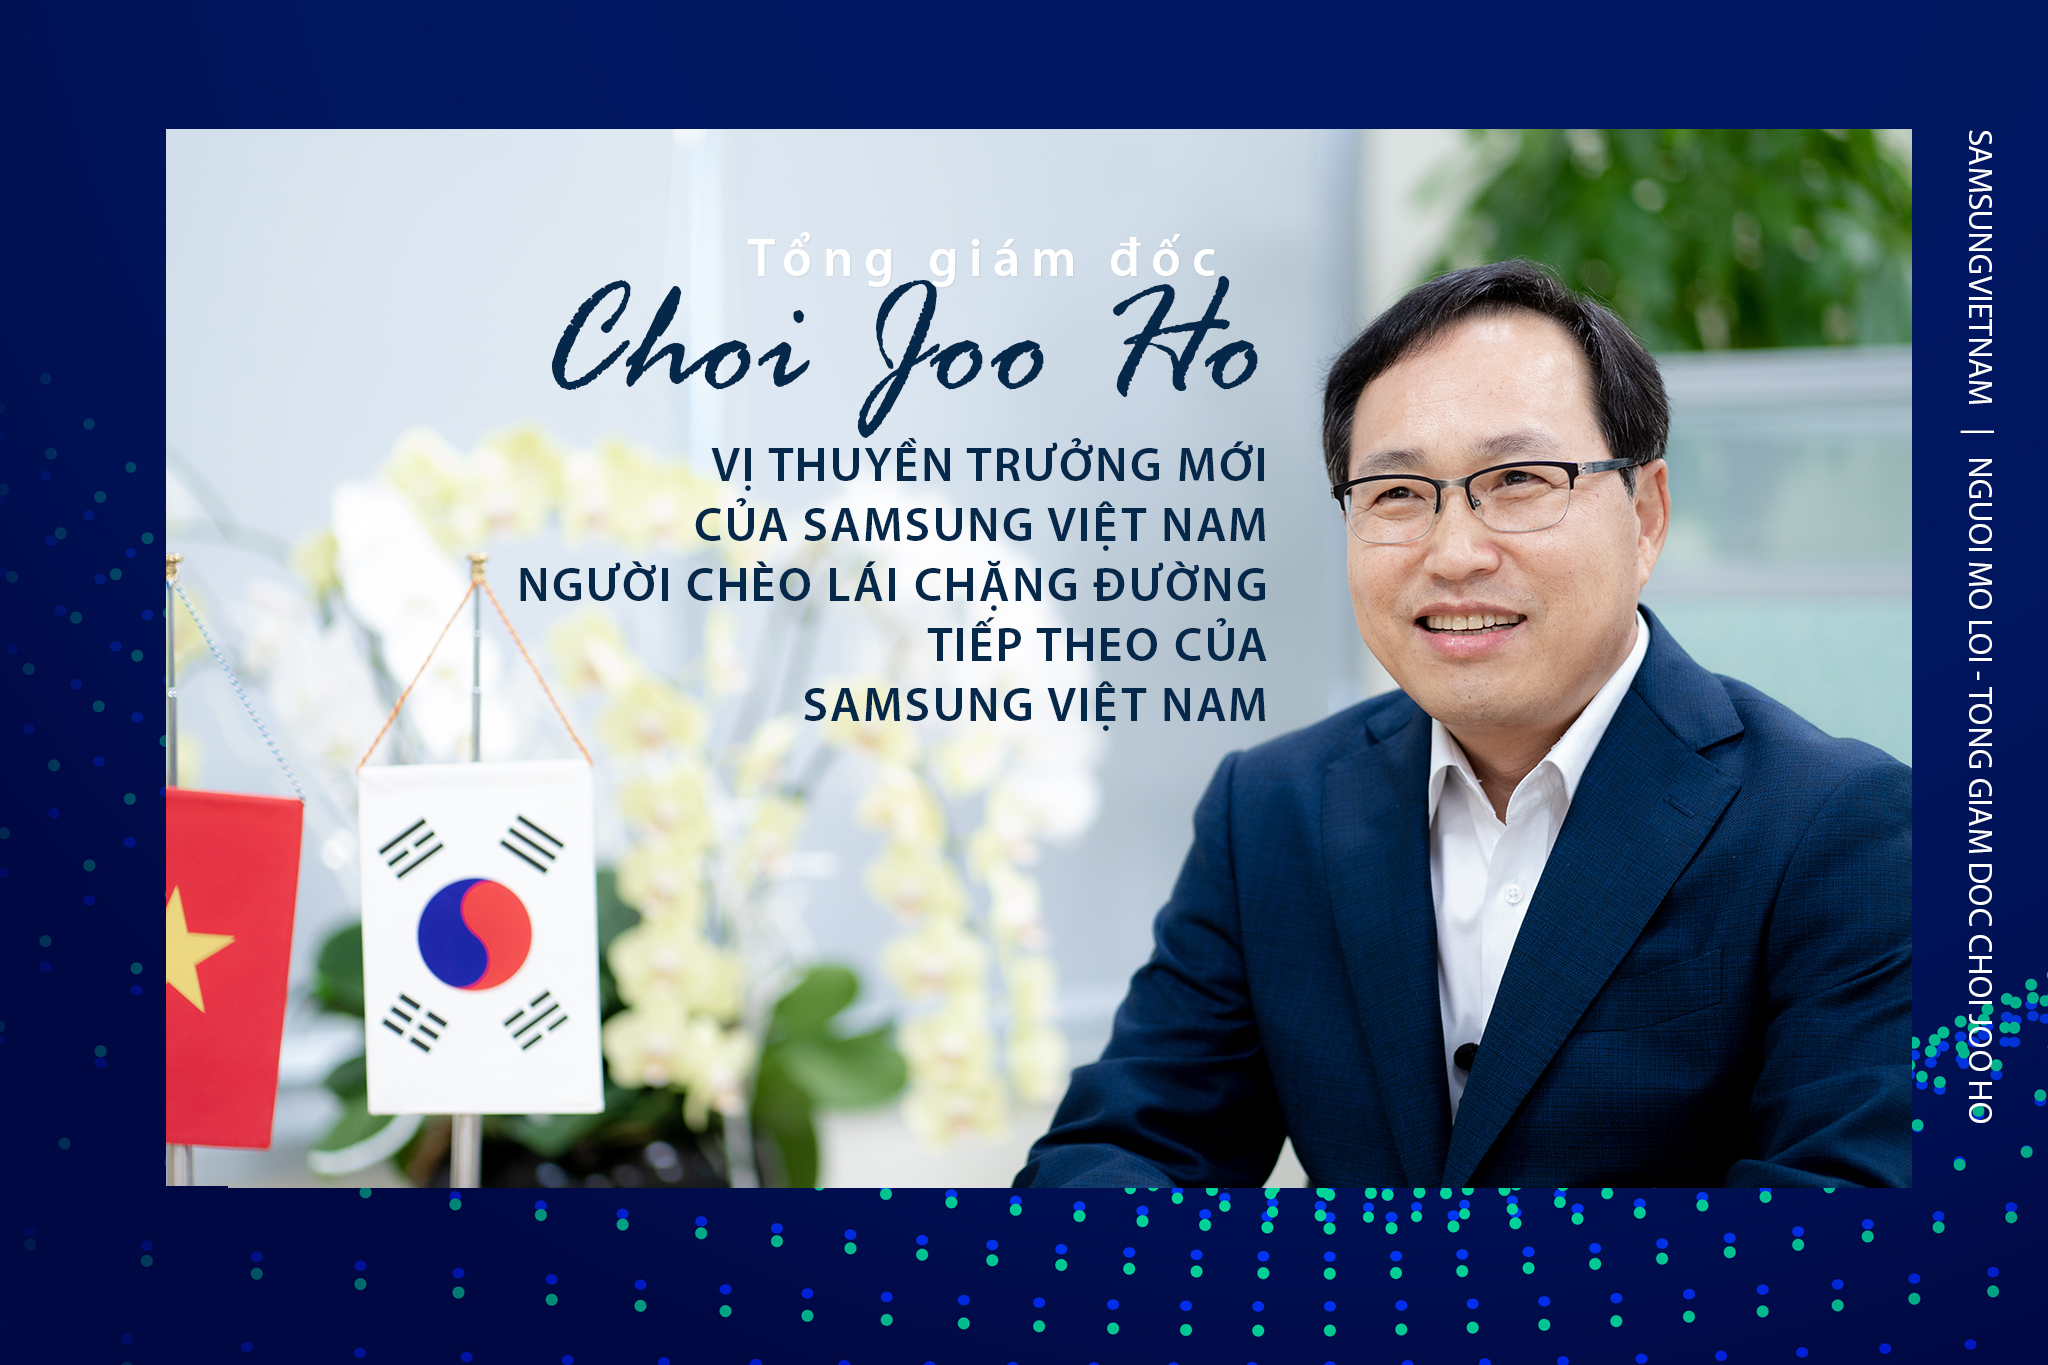 Tổng giám đốc Choi Joo Ho - vị thuyền trưởng mới của Samsung Việt Nam